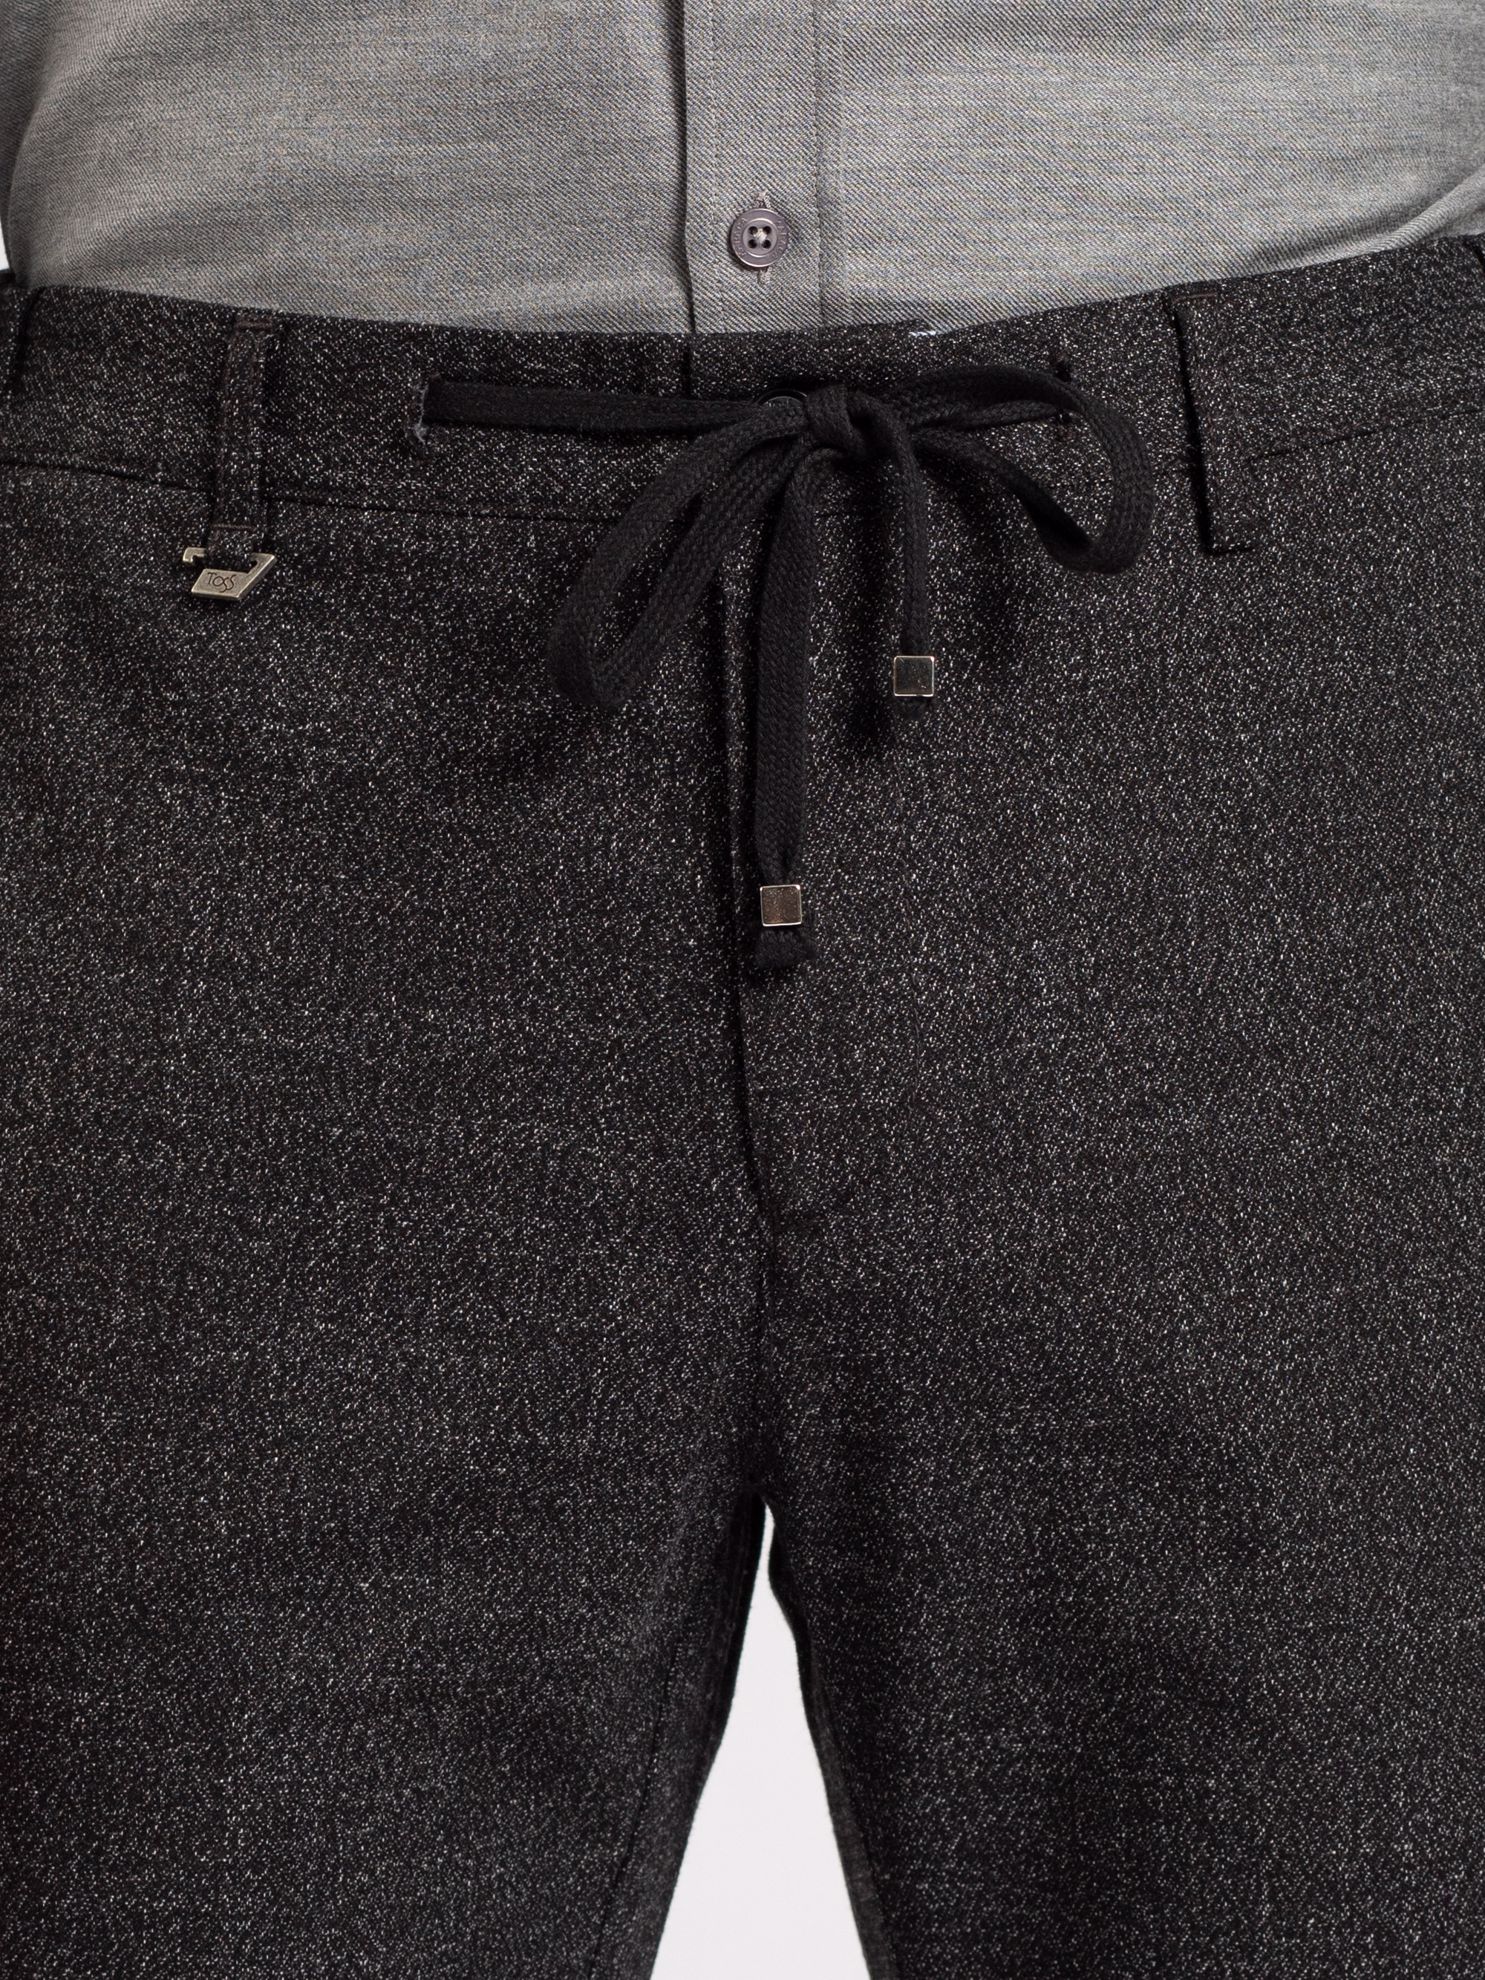 Toss Erkek 6 Drop Pantolon-Siyah. ürün görseli